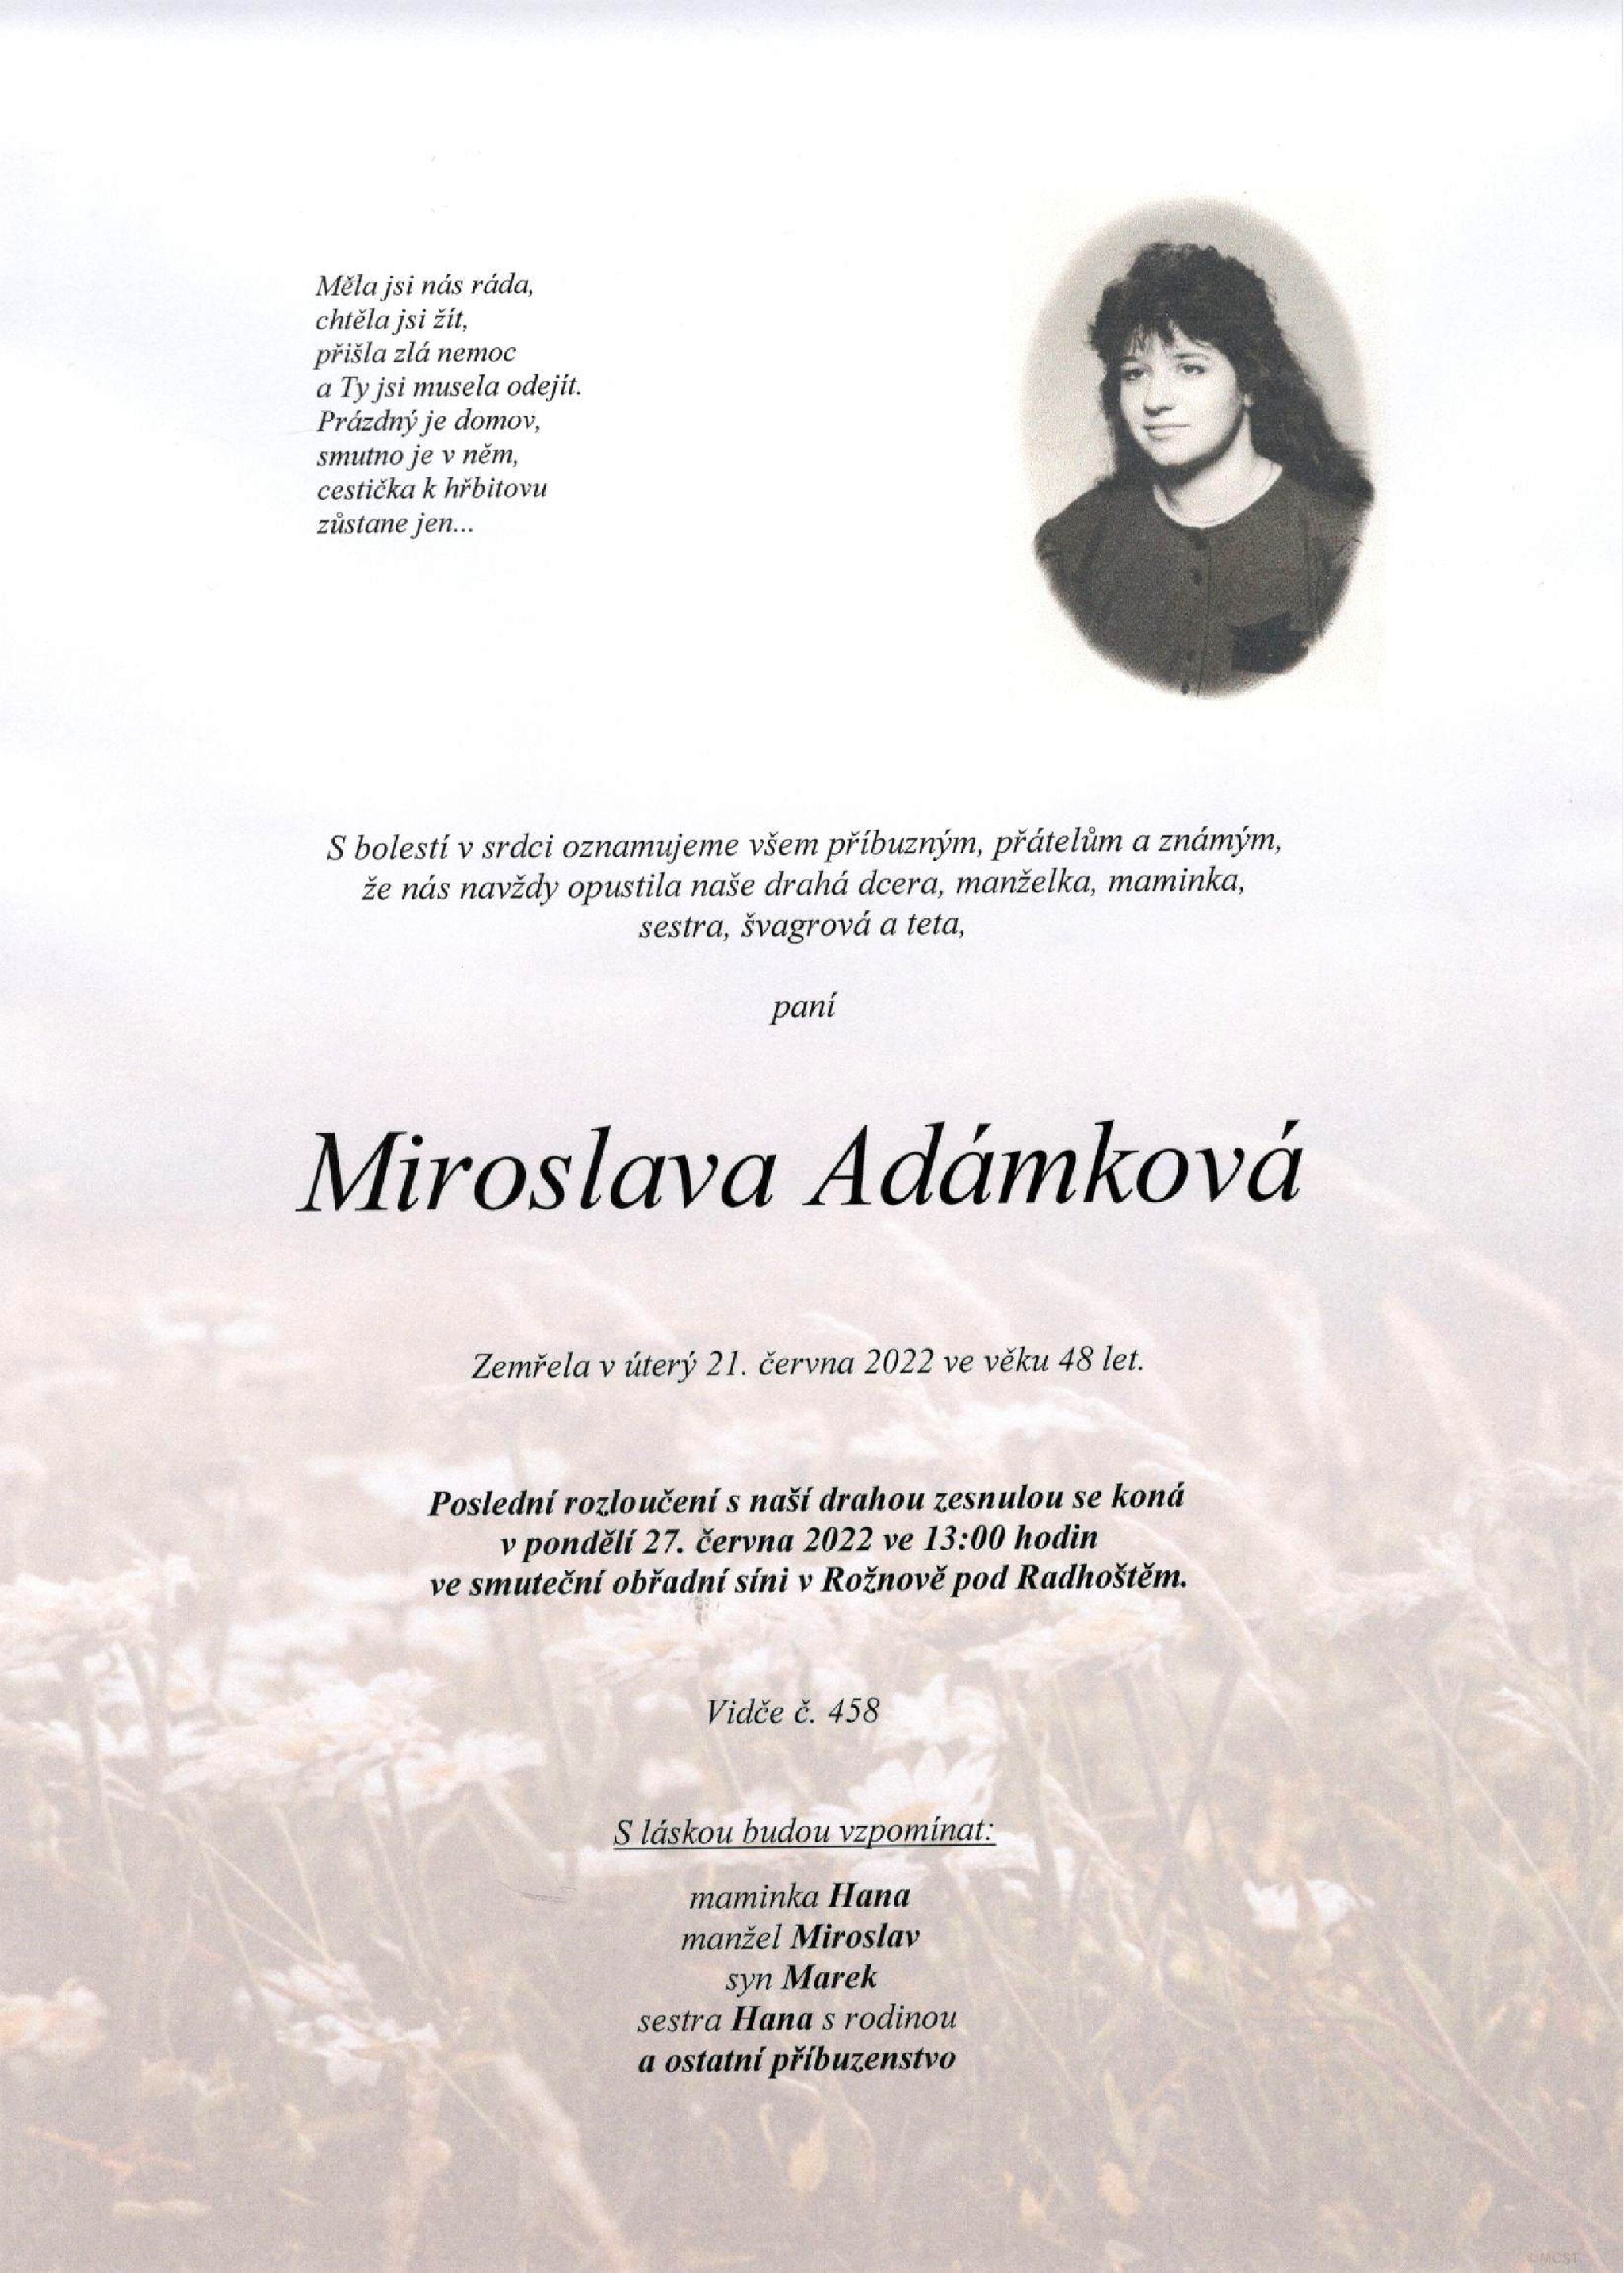 Miroslava Adámková